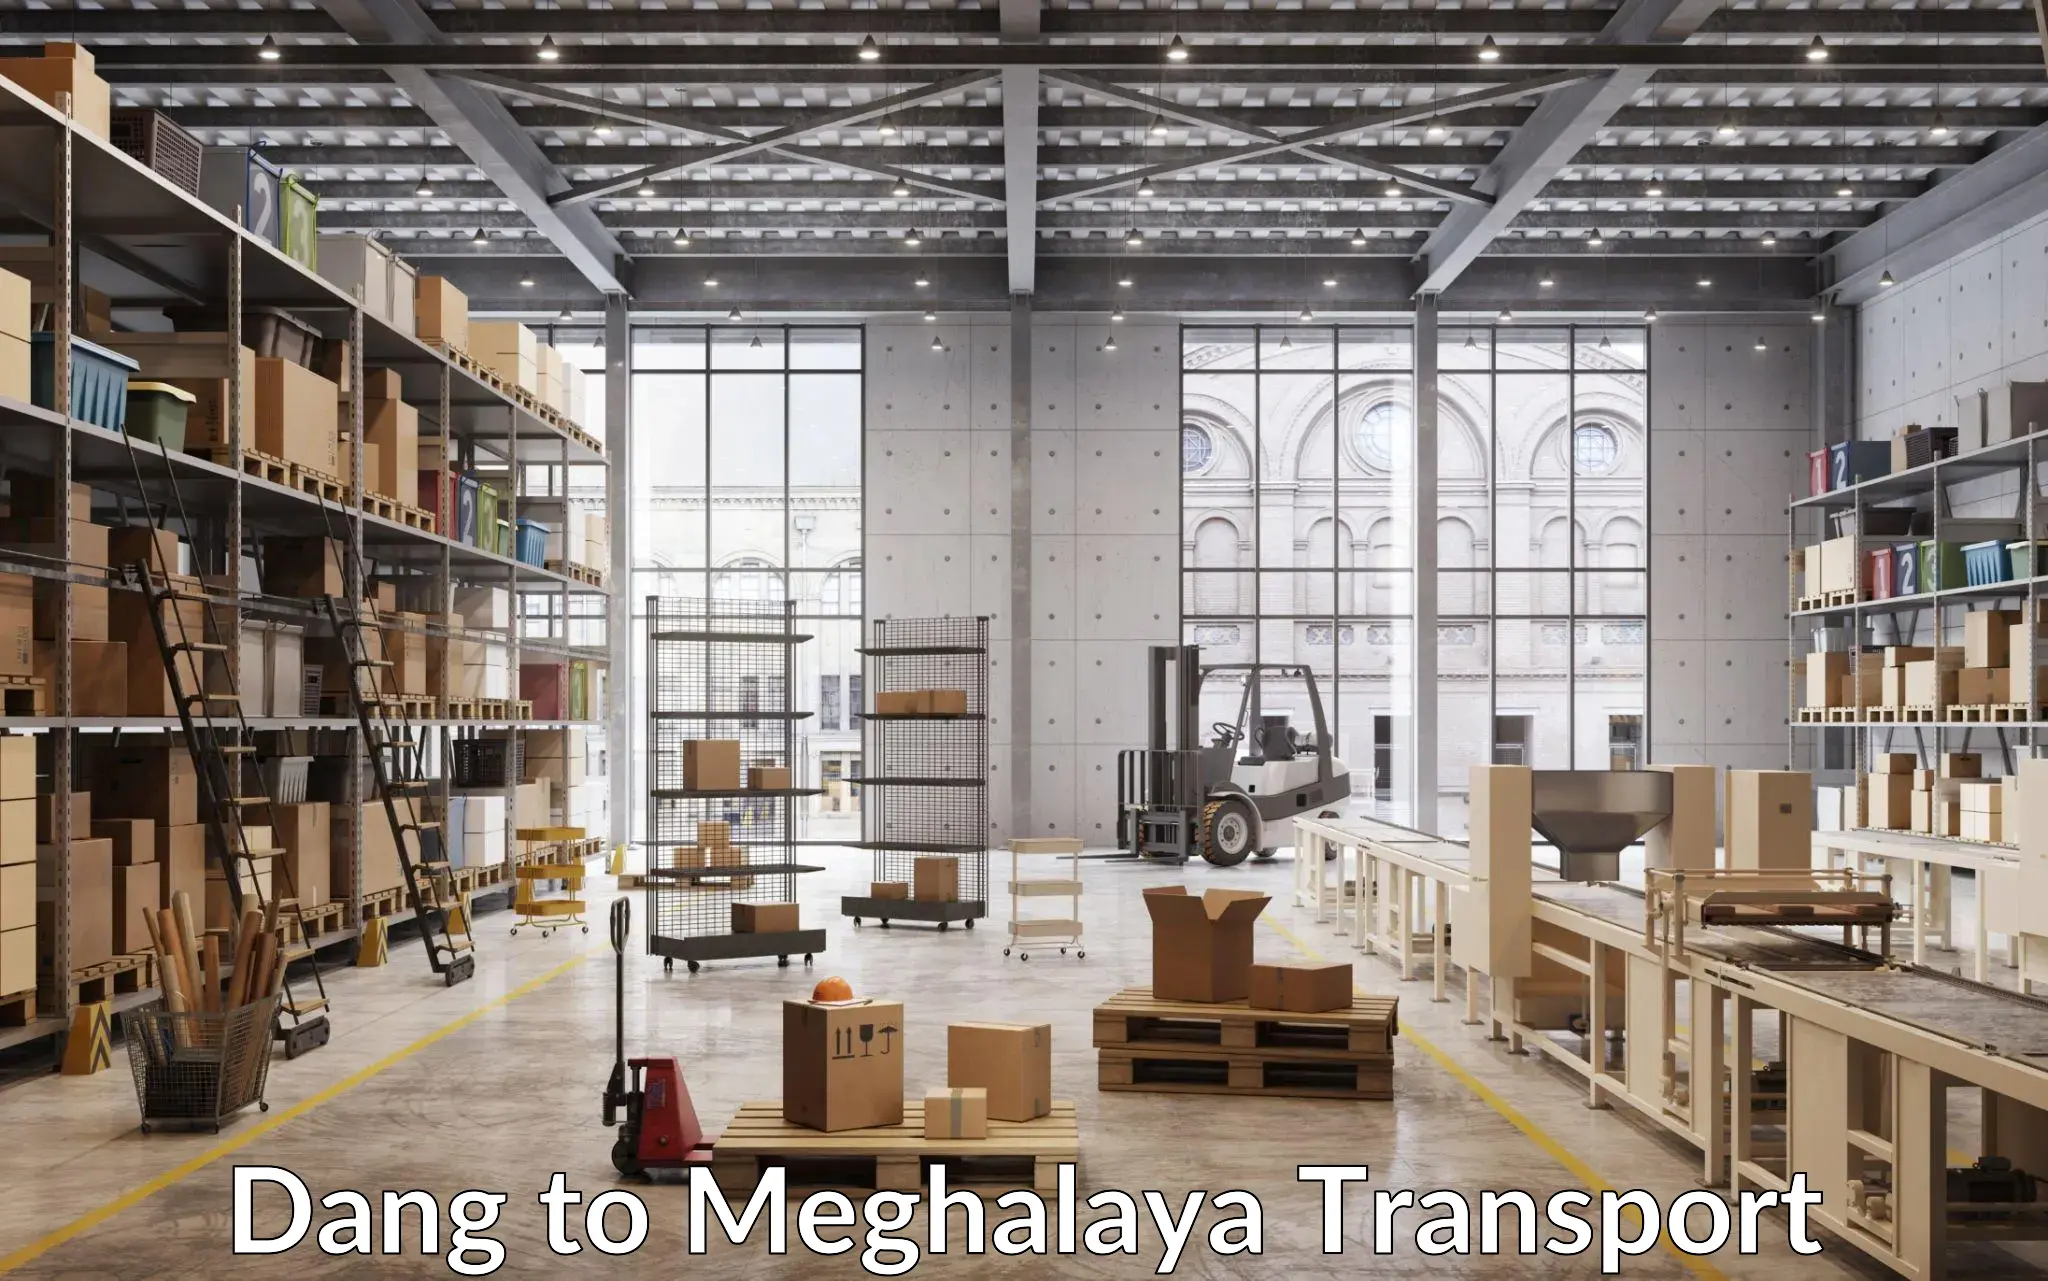 Furniture transport service Dang to Meghalaya